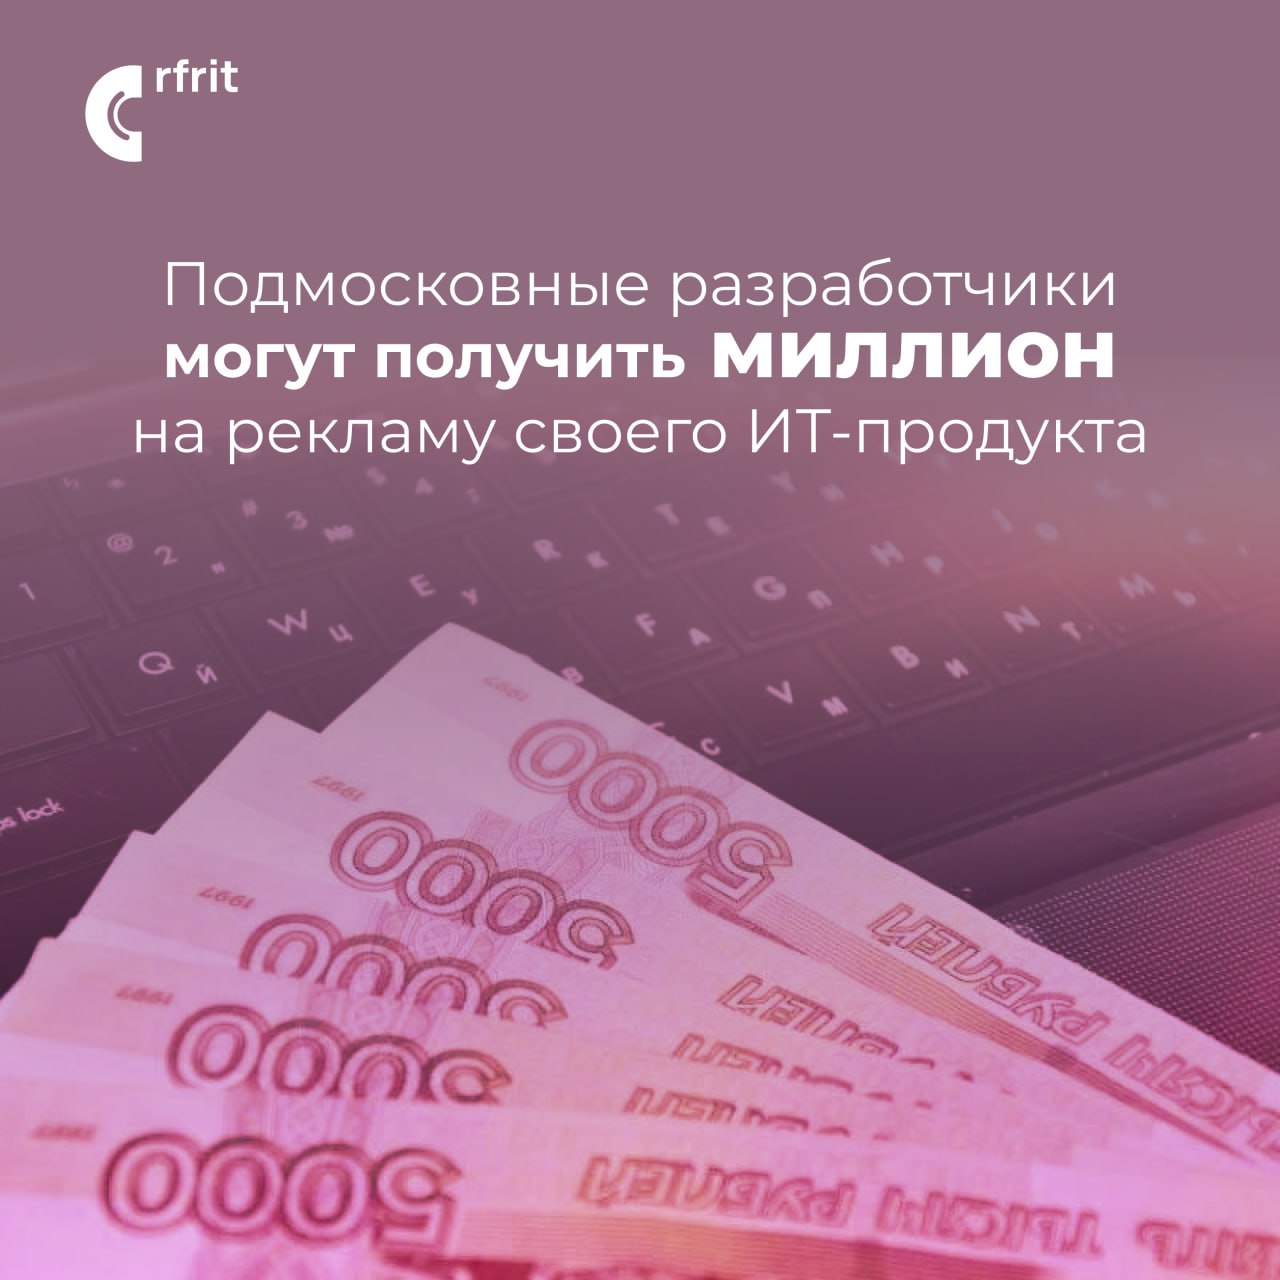 Взять 1000000 рублей в банке. Получи миллион. Продукт на миллион.